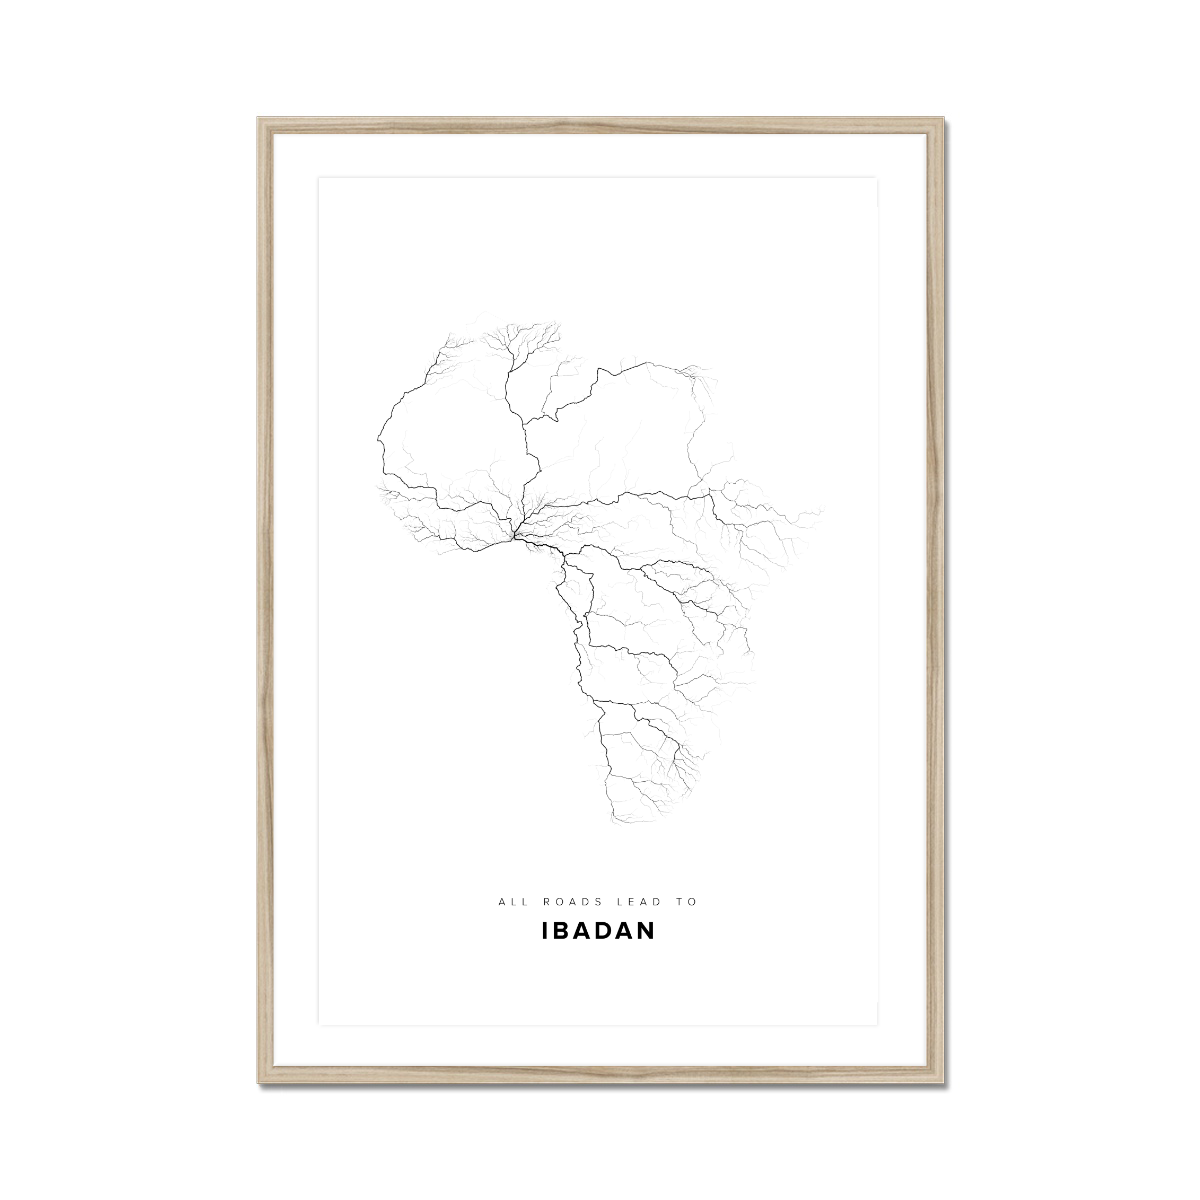 All roads lead to Ibadan (Nigeria) Fine Art Map Print